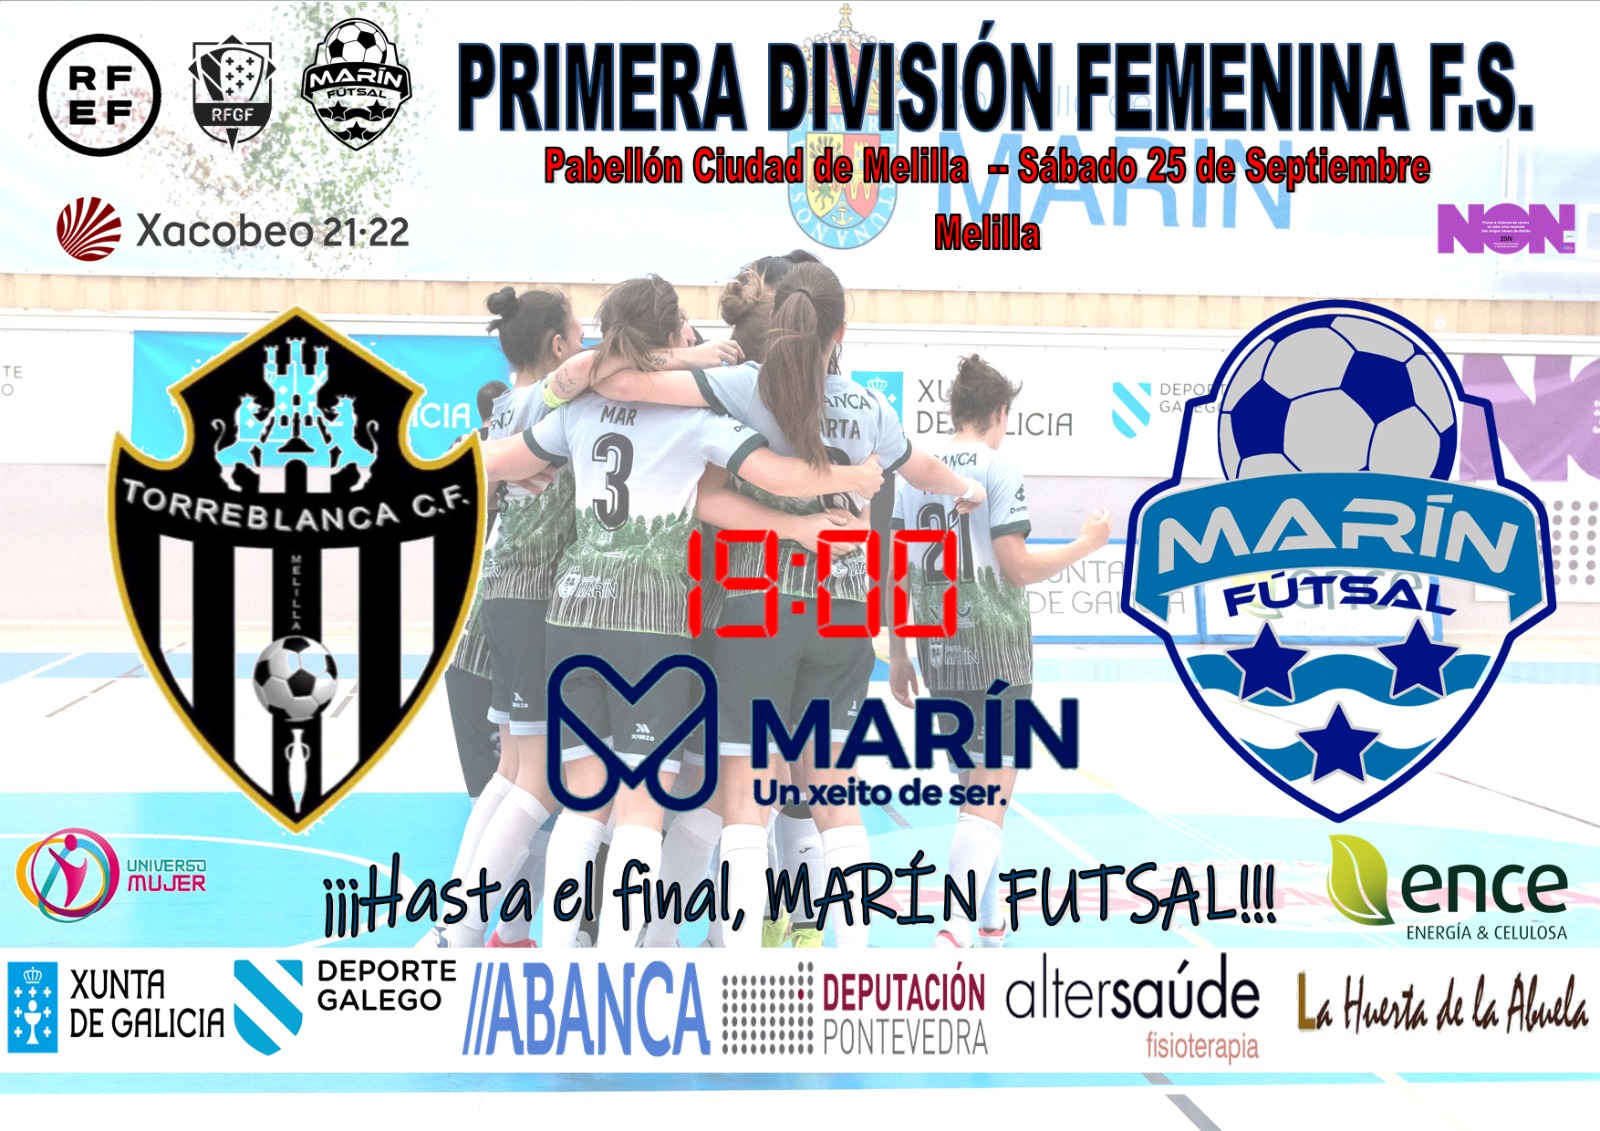 Previa del Partido de Liga: MSC Torreblanca Melilla - Ence Marín Futsal. Jornada 2ª